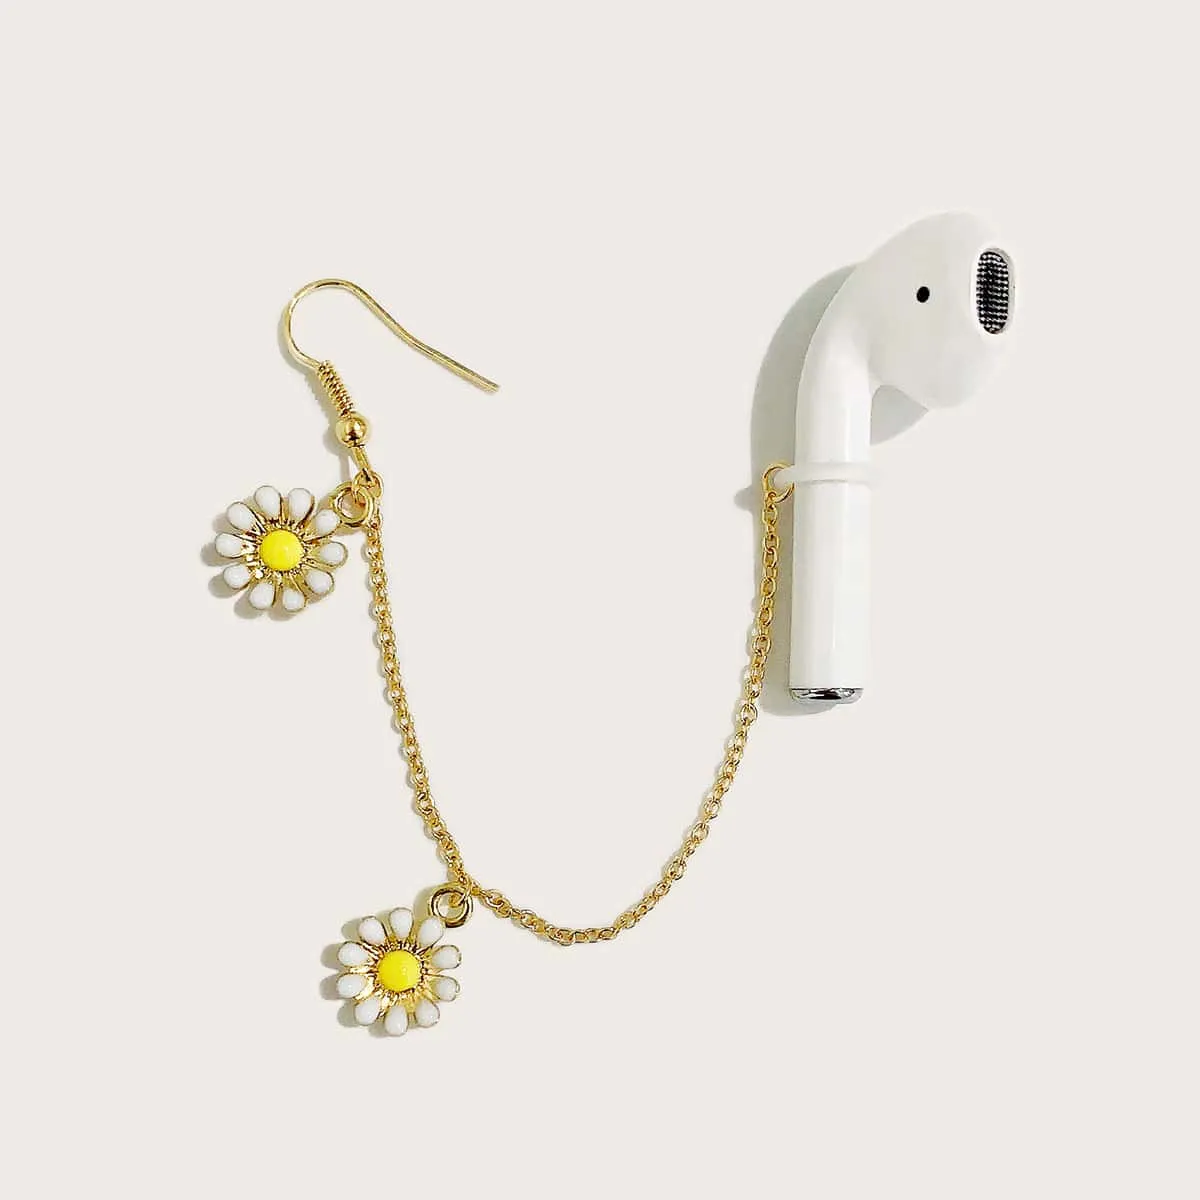 1 pezzo orecchini anti-perso per auricolare Bluetooth con ciondolo fiore